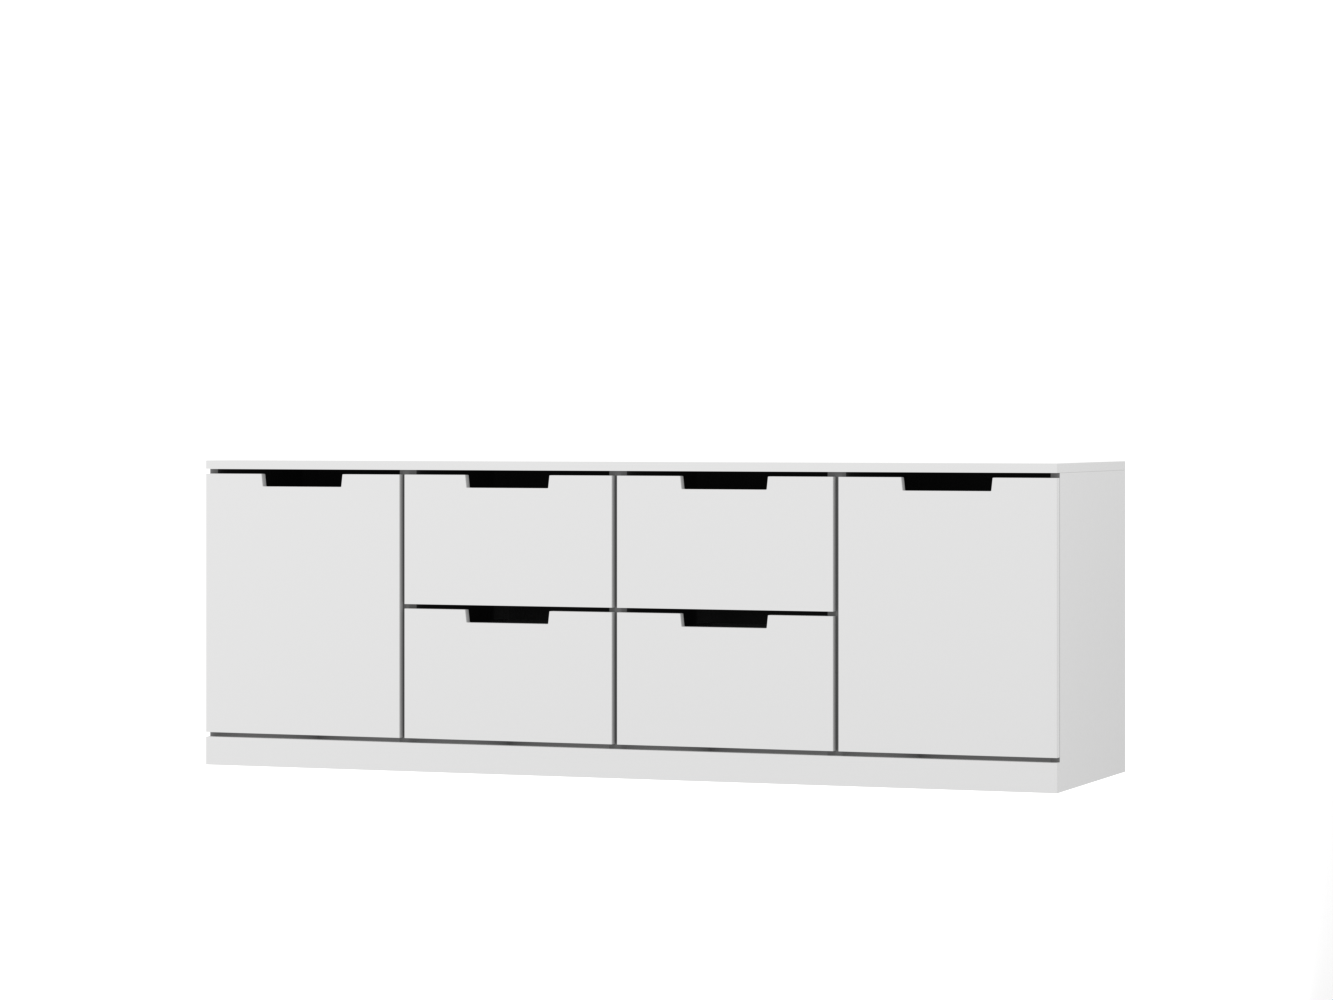  Комод Нордли 36 white ИКЕА (IKEA) изображение товара